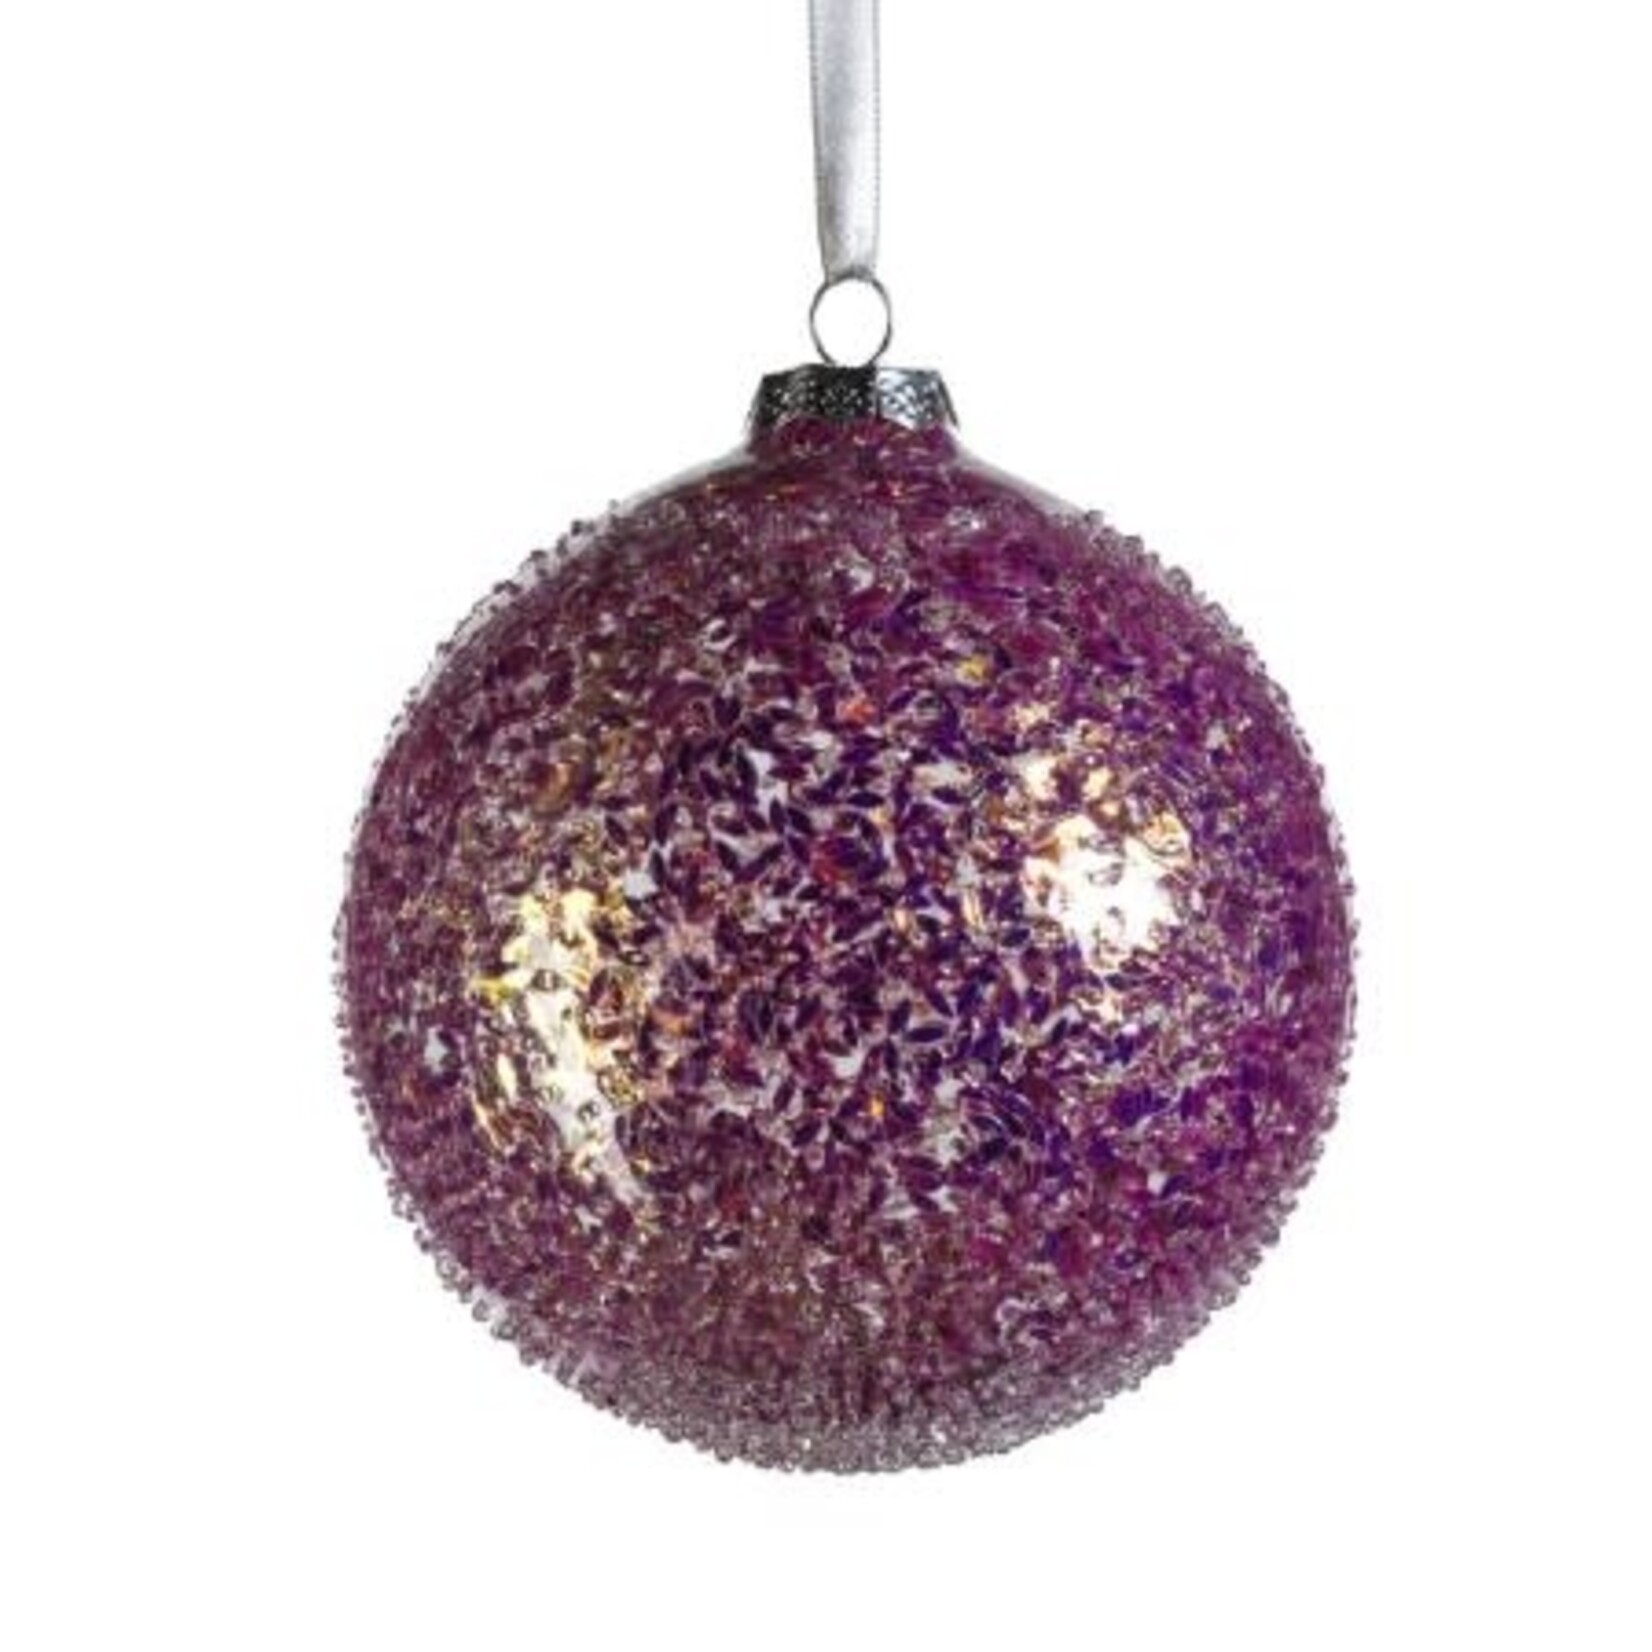 Zodax Confetti Glass Ball Ornament